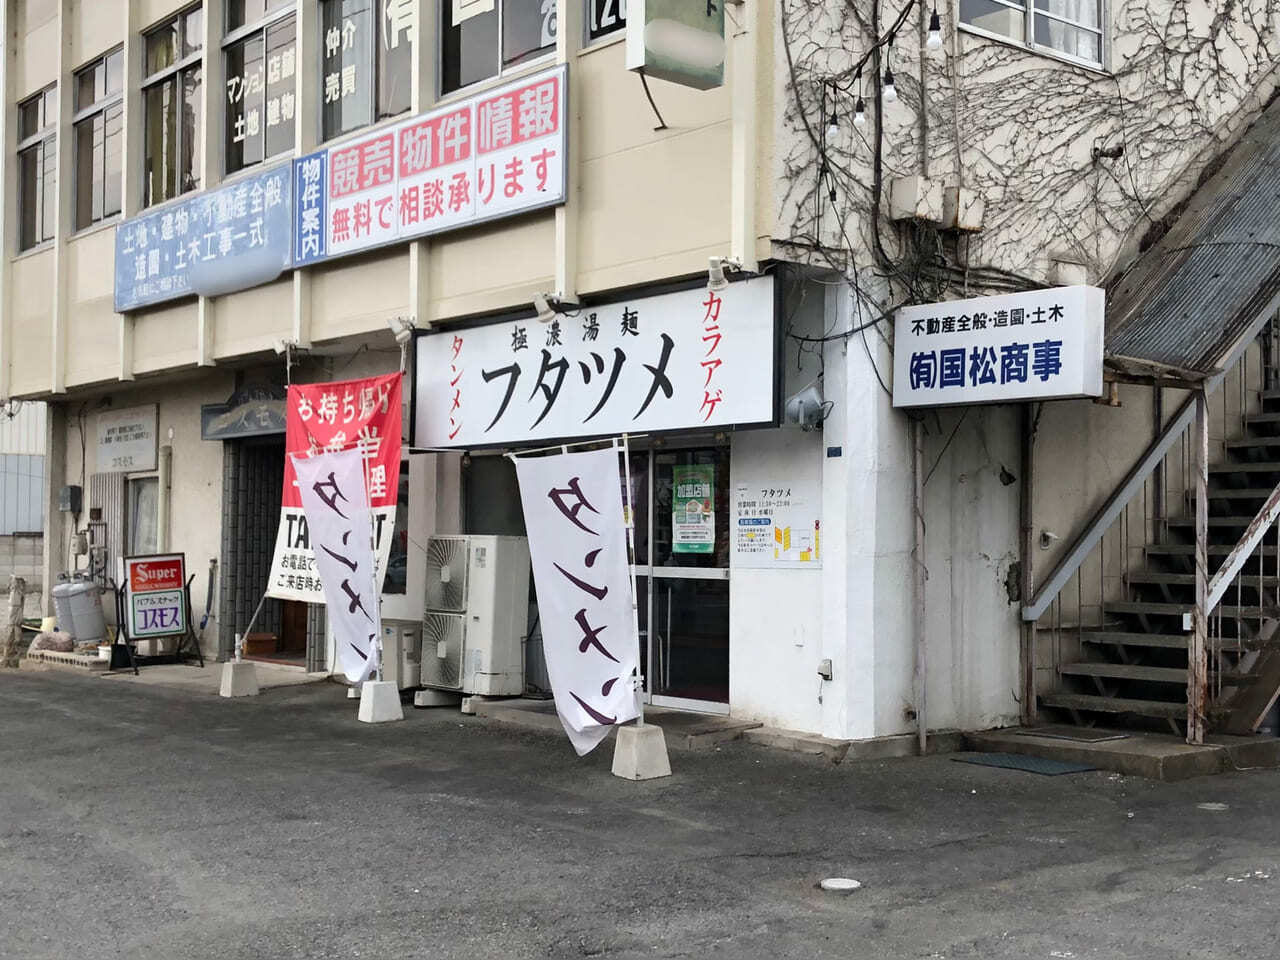 極濃湯麺 フタツメ 八千代店